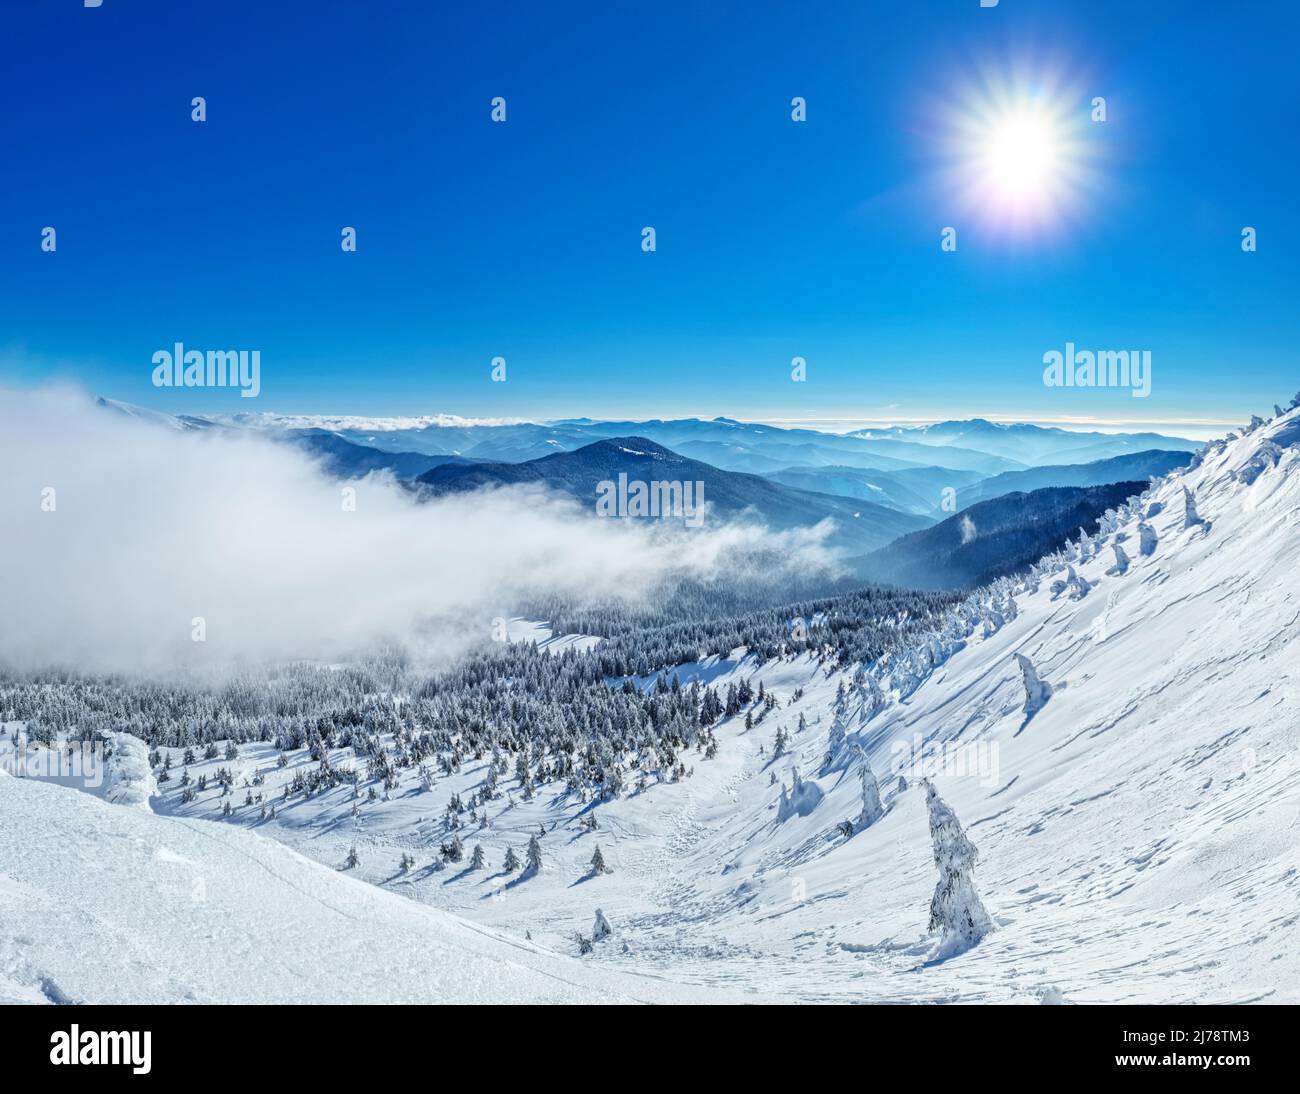 Magnifique paysage d'hiver ensoleillé dans les montagnes de Thottoy. Montagne et sapins couverts de neige et de nuages. Banque D'Images